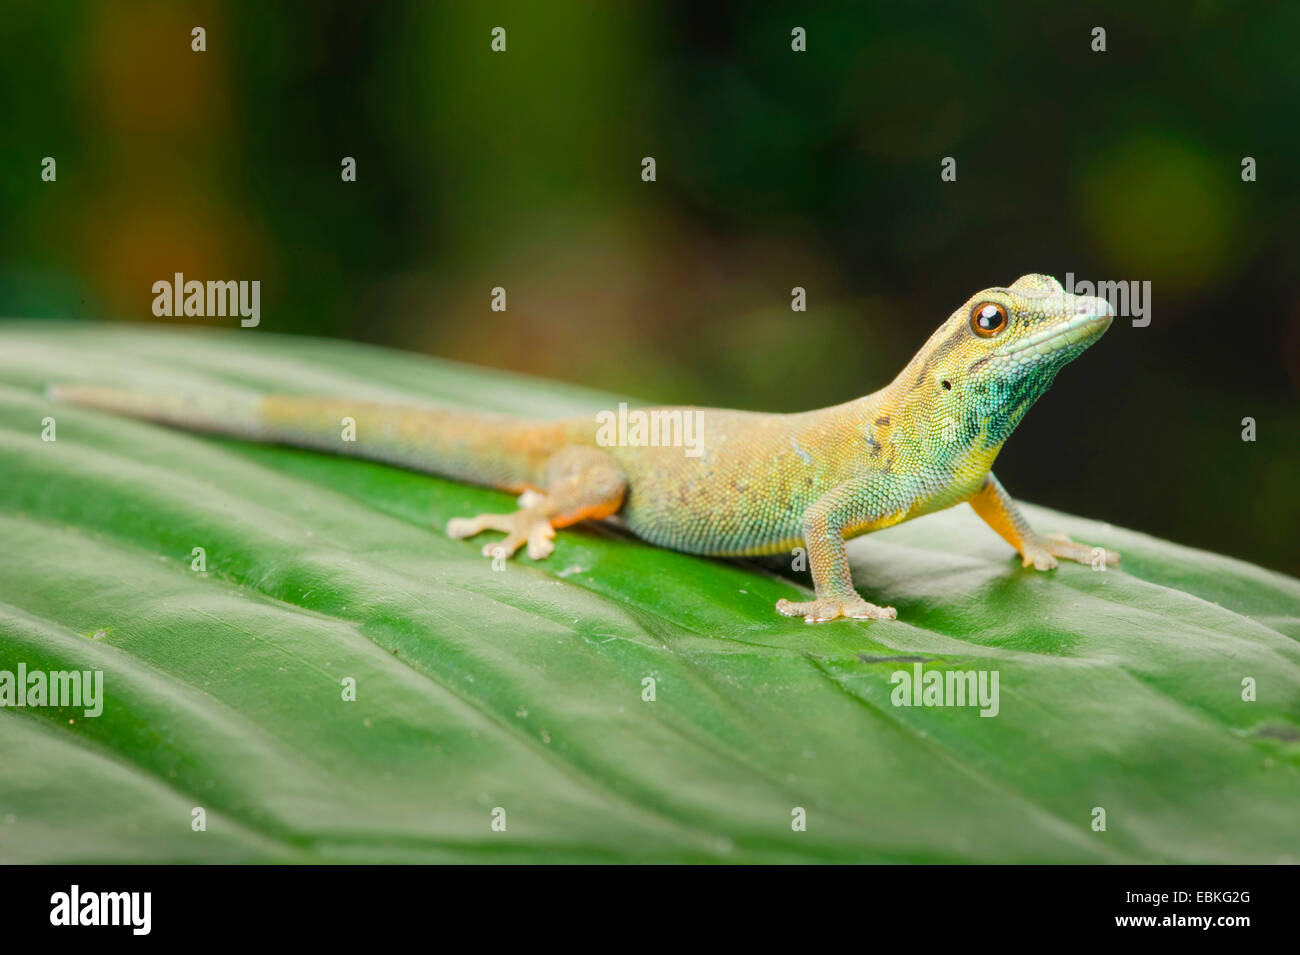 Azul eléctrico Gecko, Williams (Lygodactylus williamsi geco enano), sentado sobre una planta femenina Foto de stock